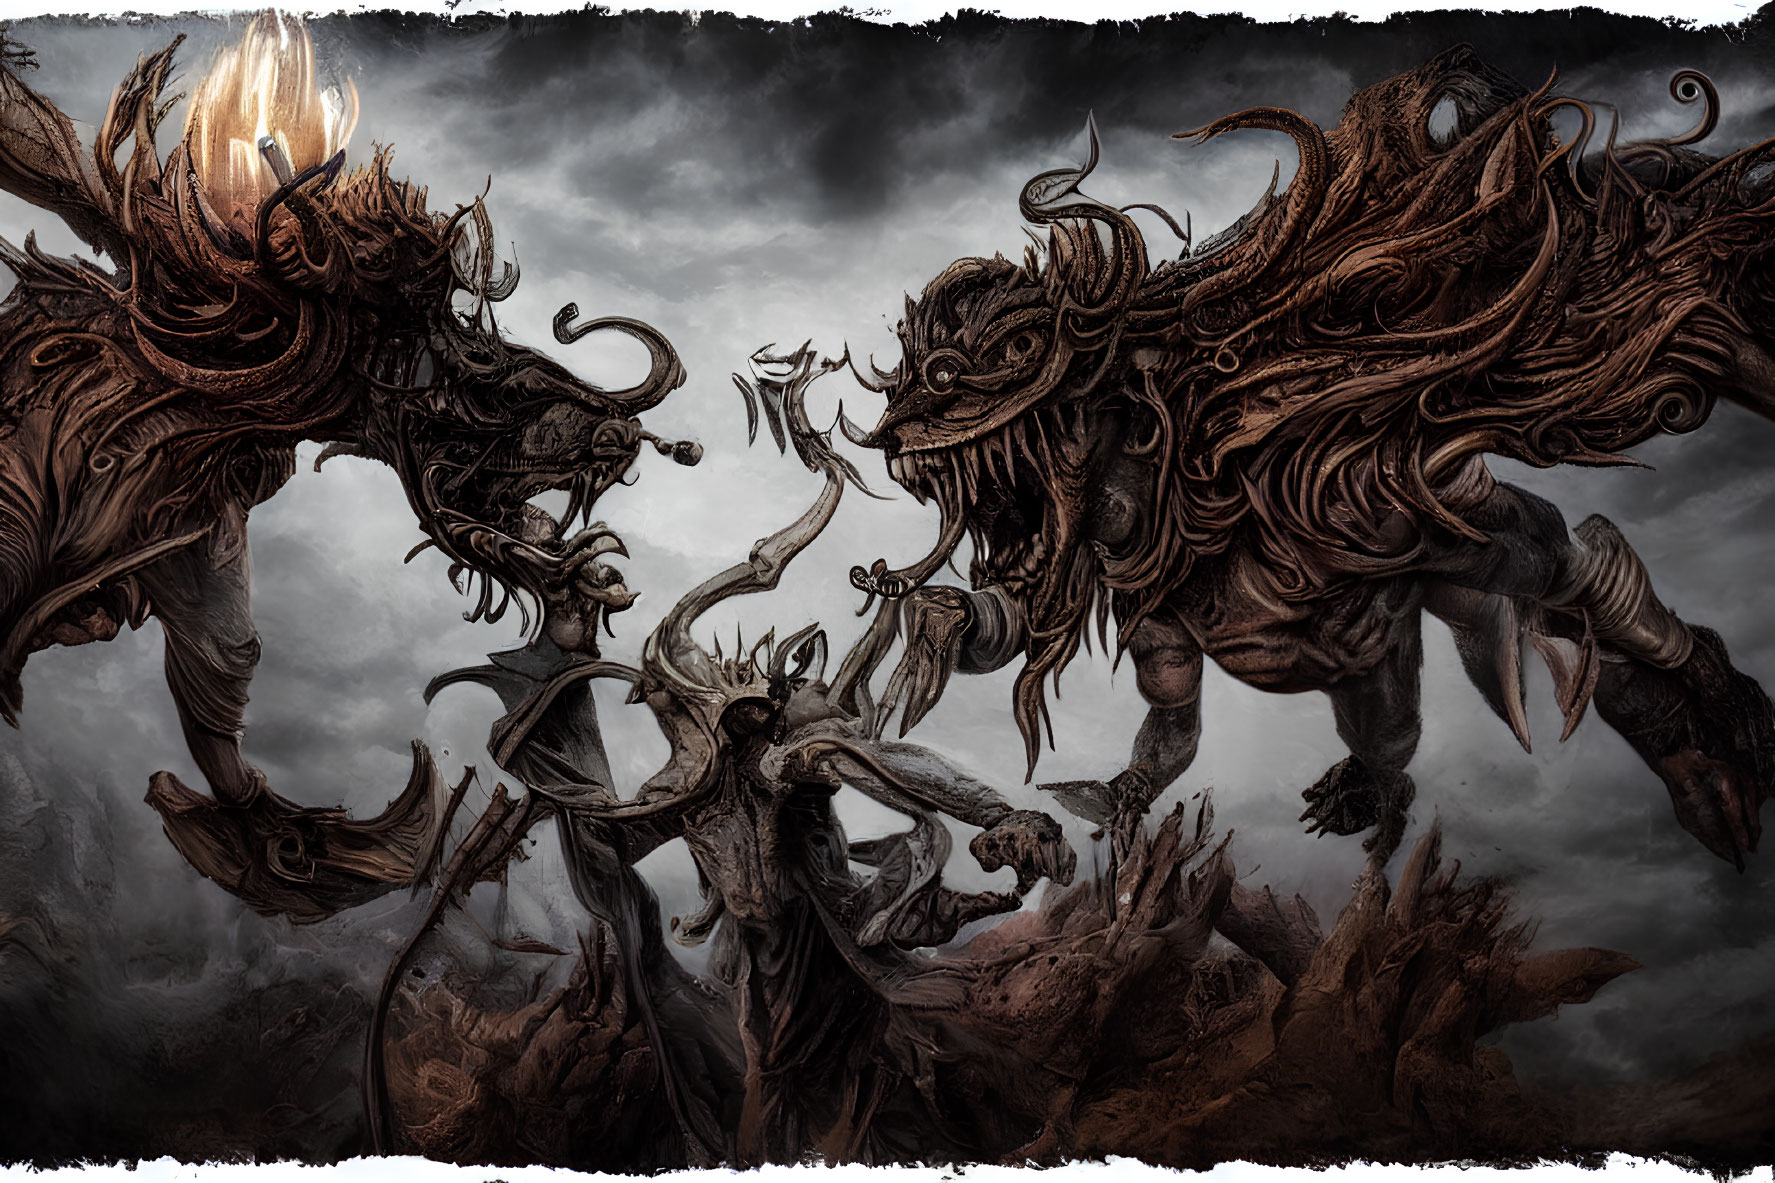 Mythical creatures in intense battle under dark sky